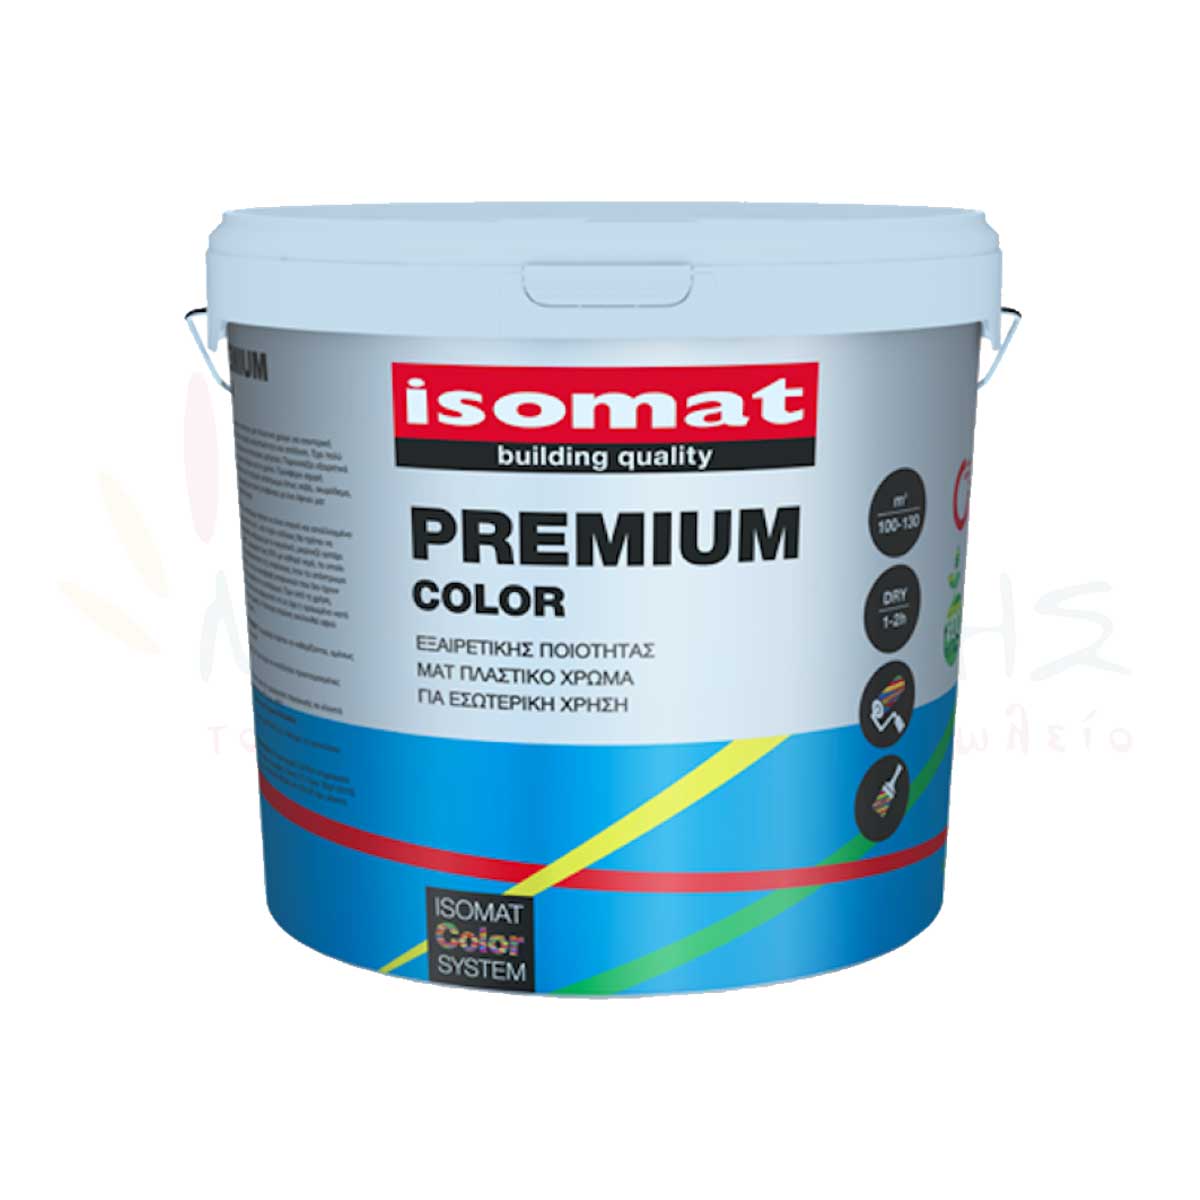 Premium Color - ISOMAT